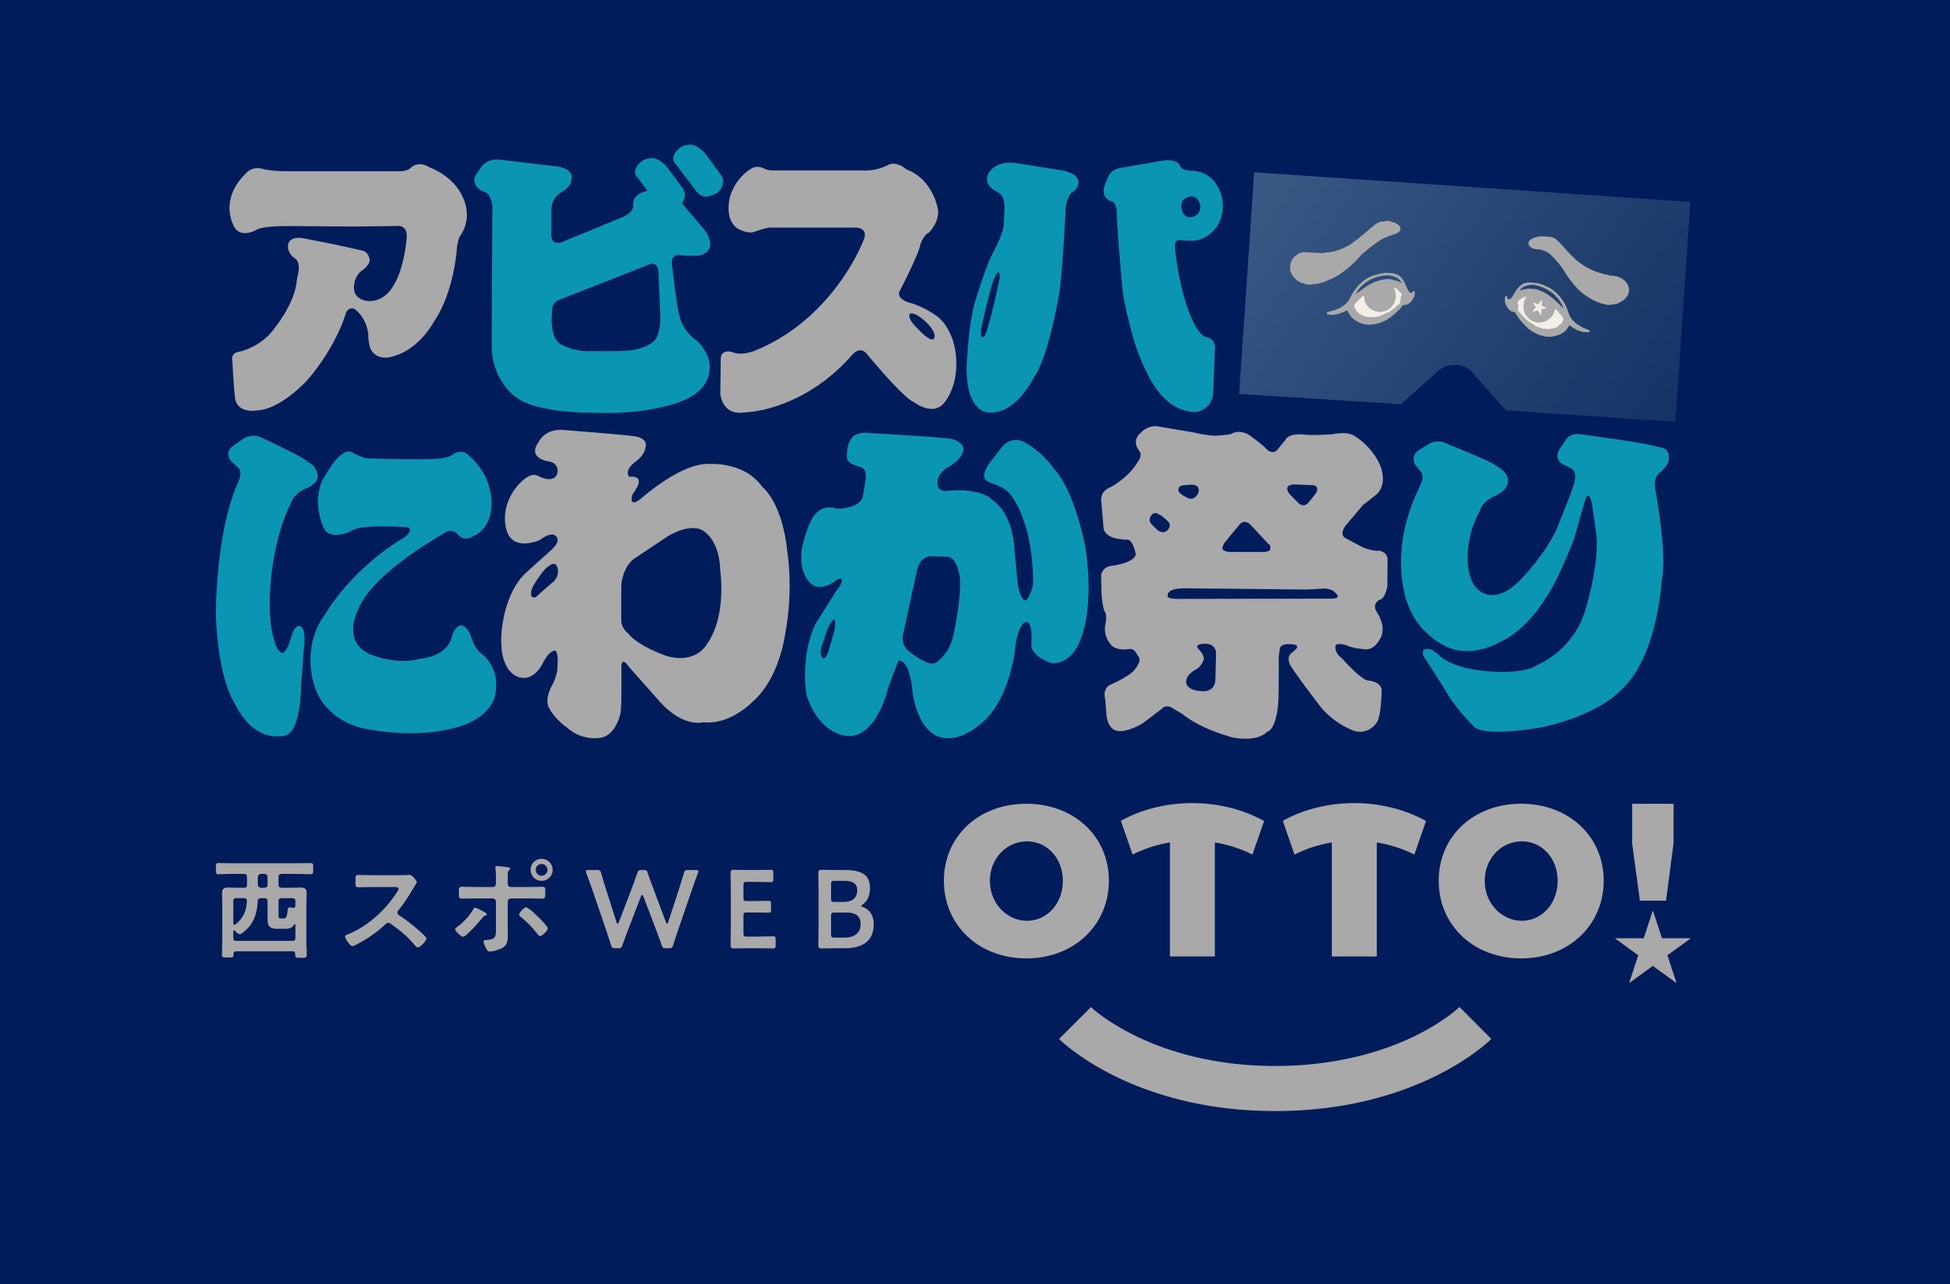 アビスパ福岡のホームを満員にしたい!!　クラウドファンディング実施中　「西スポWEB OTTO! アビスパにわか祭り」